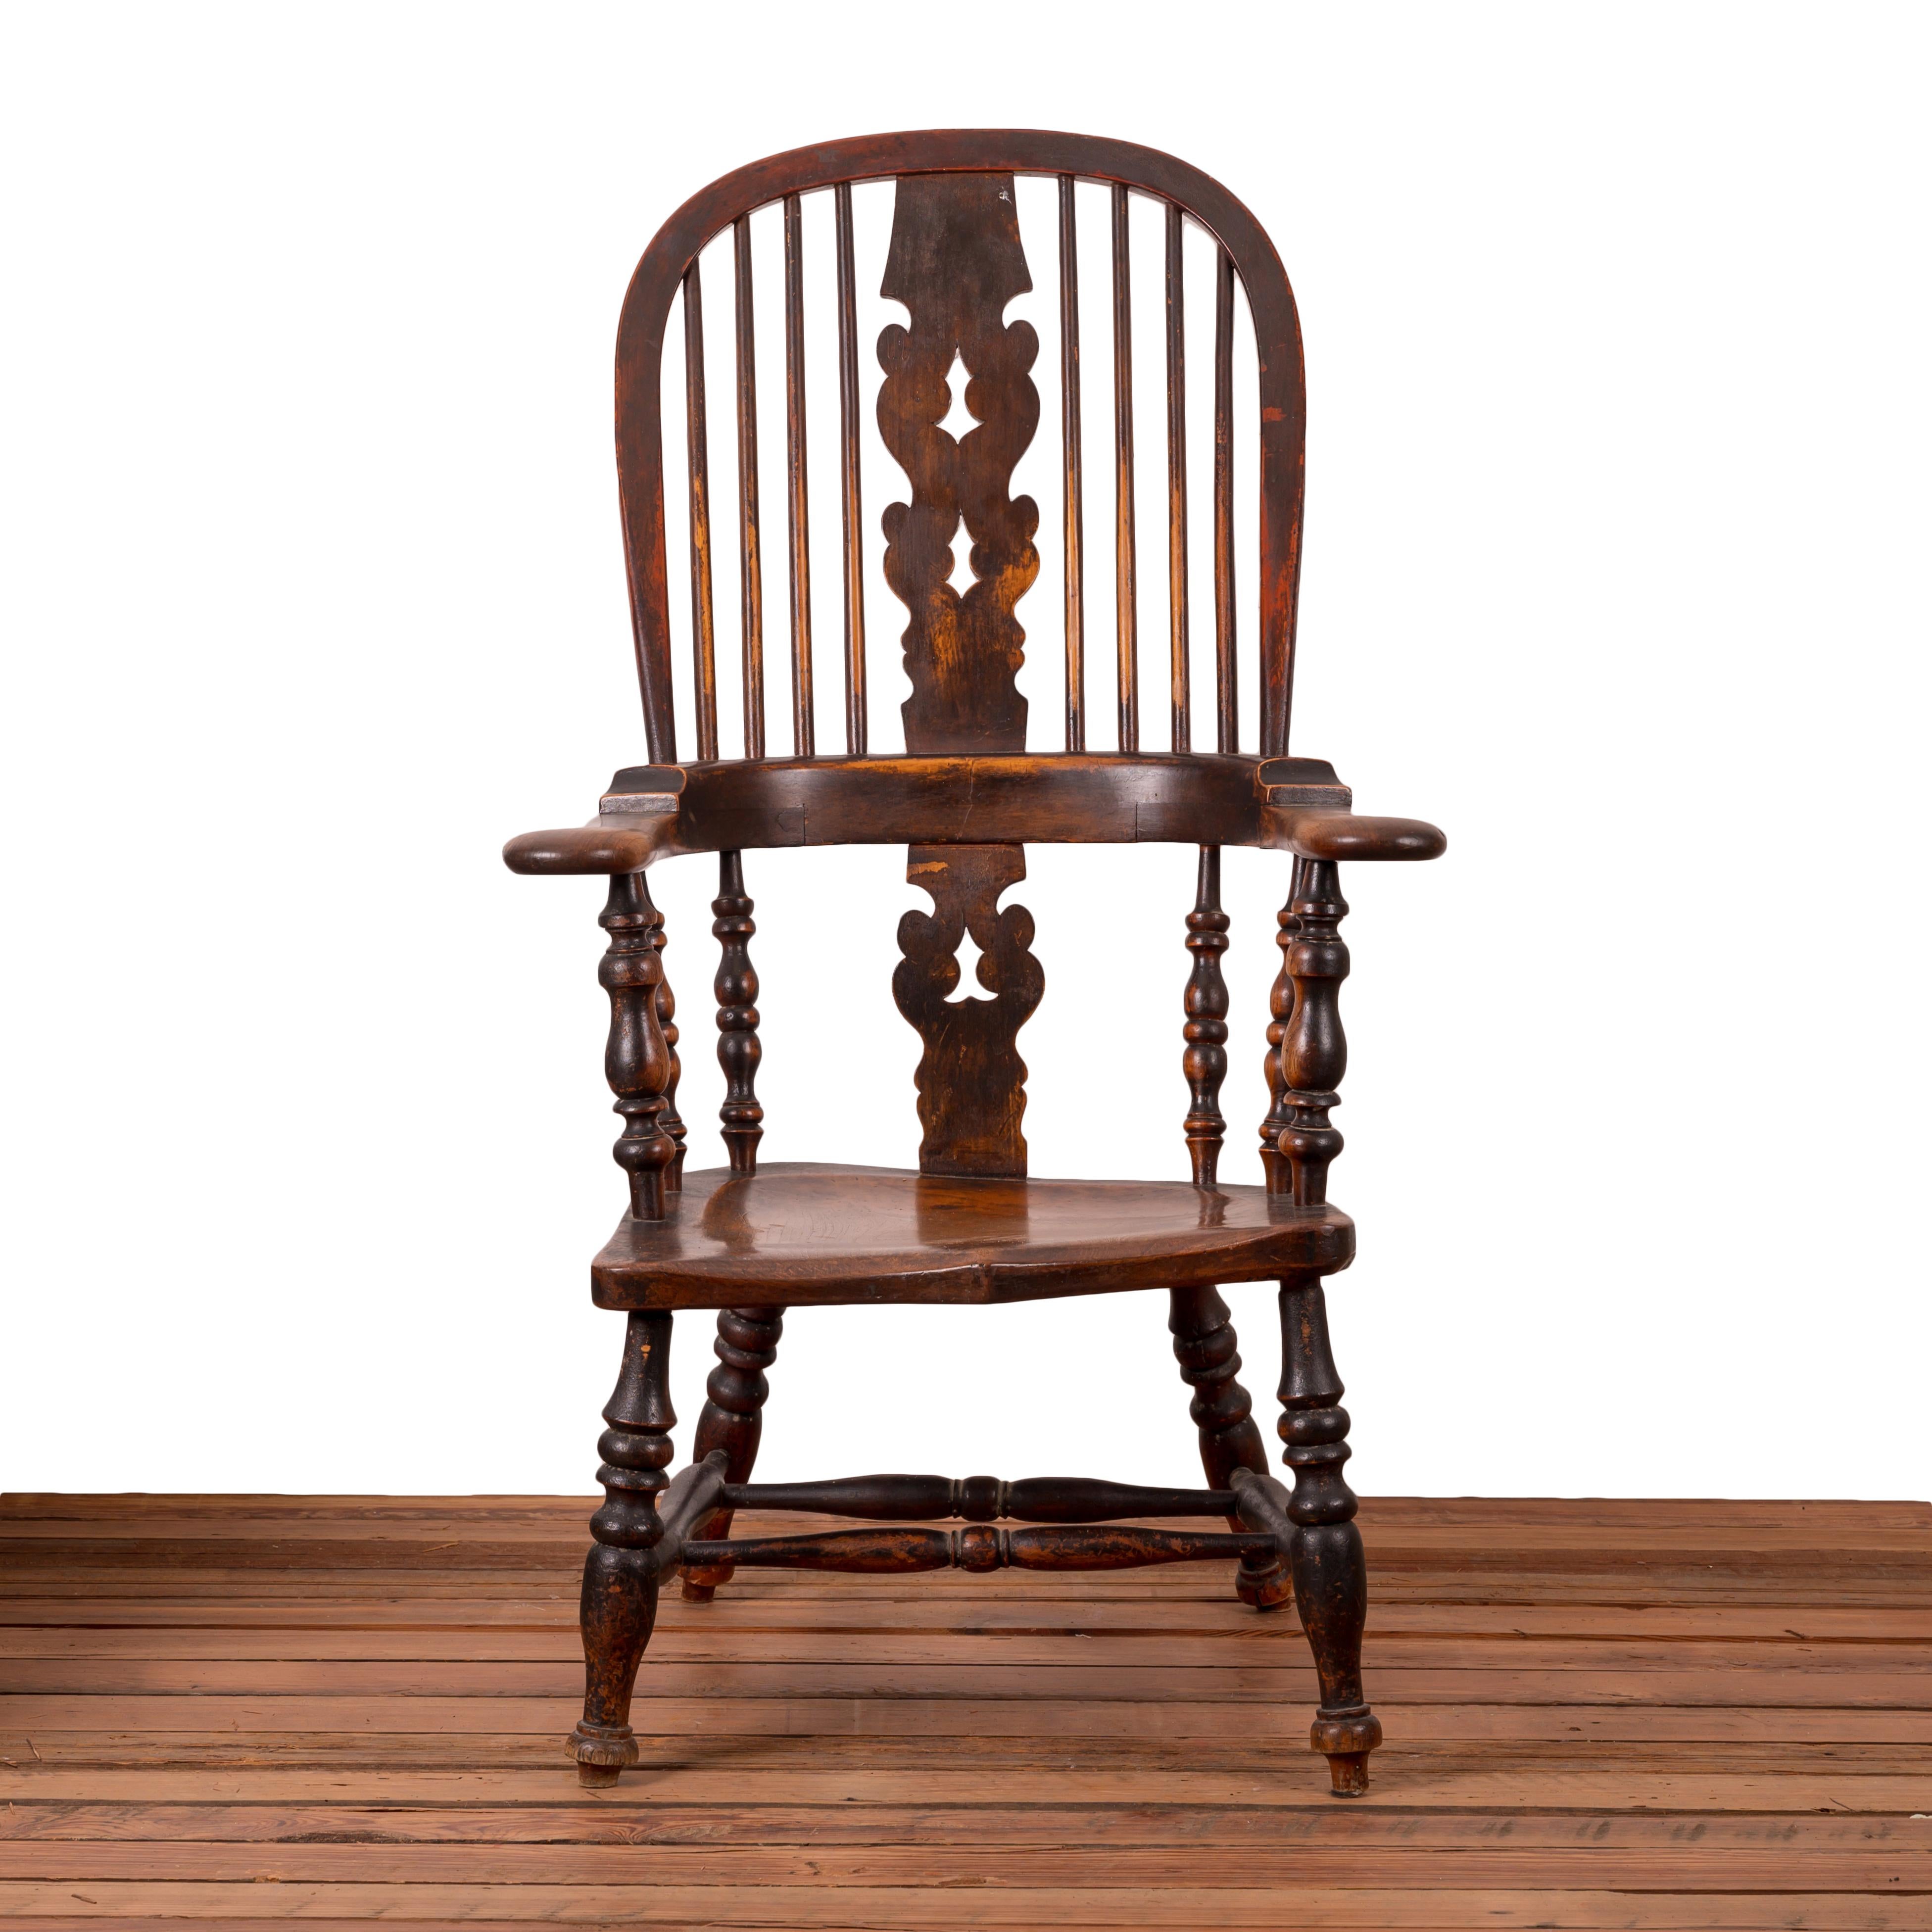 Ein frühviktorianischer, breitarmiger Windsor-Stuhl aus Eibe, Ulme und Esche.

Tolle Originaloberfläche.  Unterseite signiert G.G. Barker.  Wahrscheinlich George G. Barker & Co. Importeure in Wilmington, NC, ca. 1870er Jahre. 

 

24 Zoll breit x 25